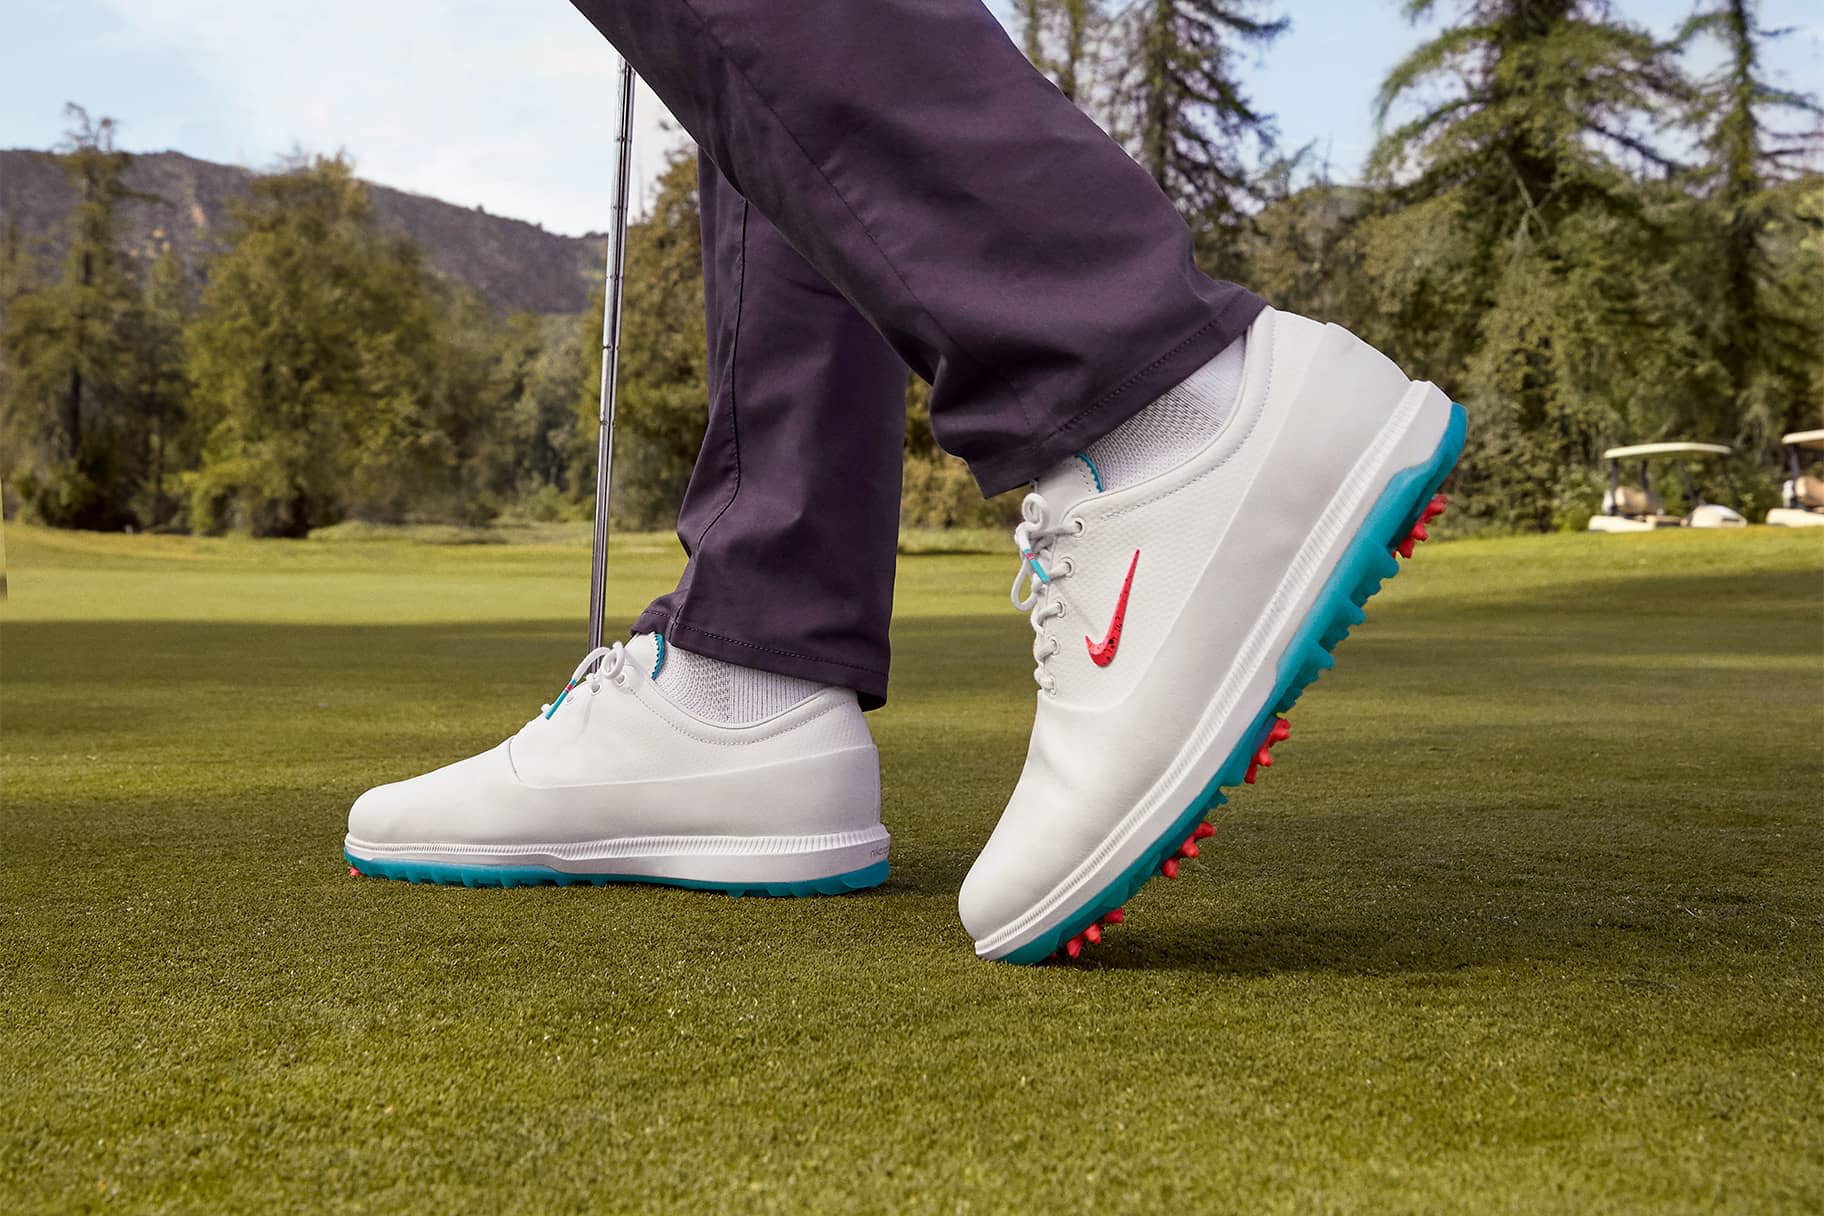 Les meilleures chaussures de golf Nike pour l'adhérence, la stabilité et le confort